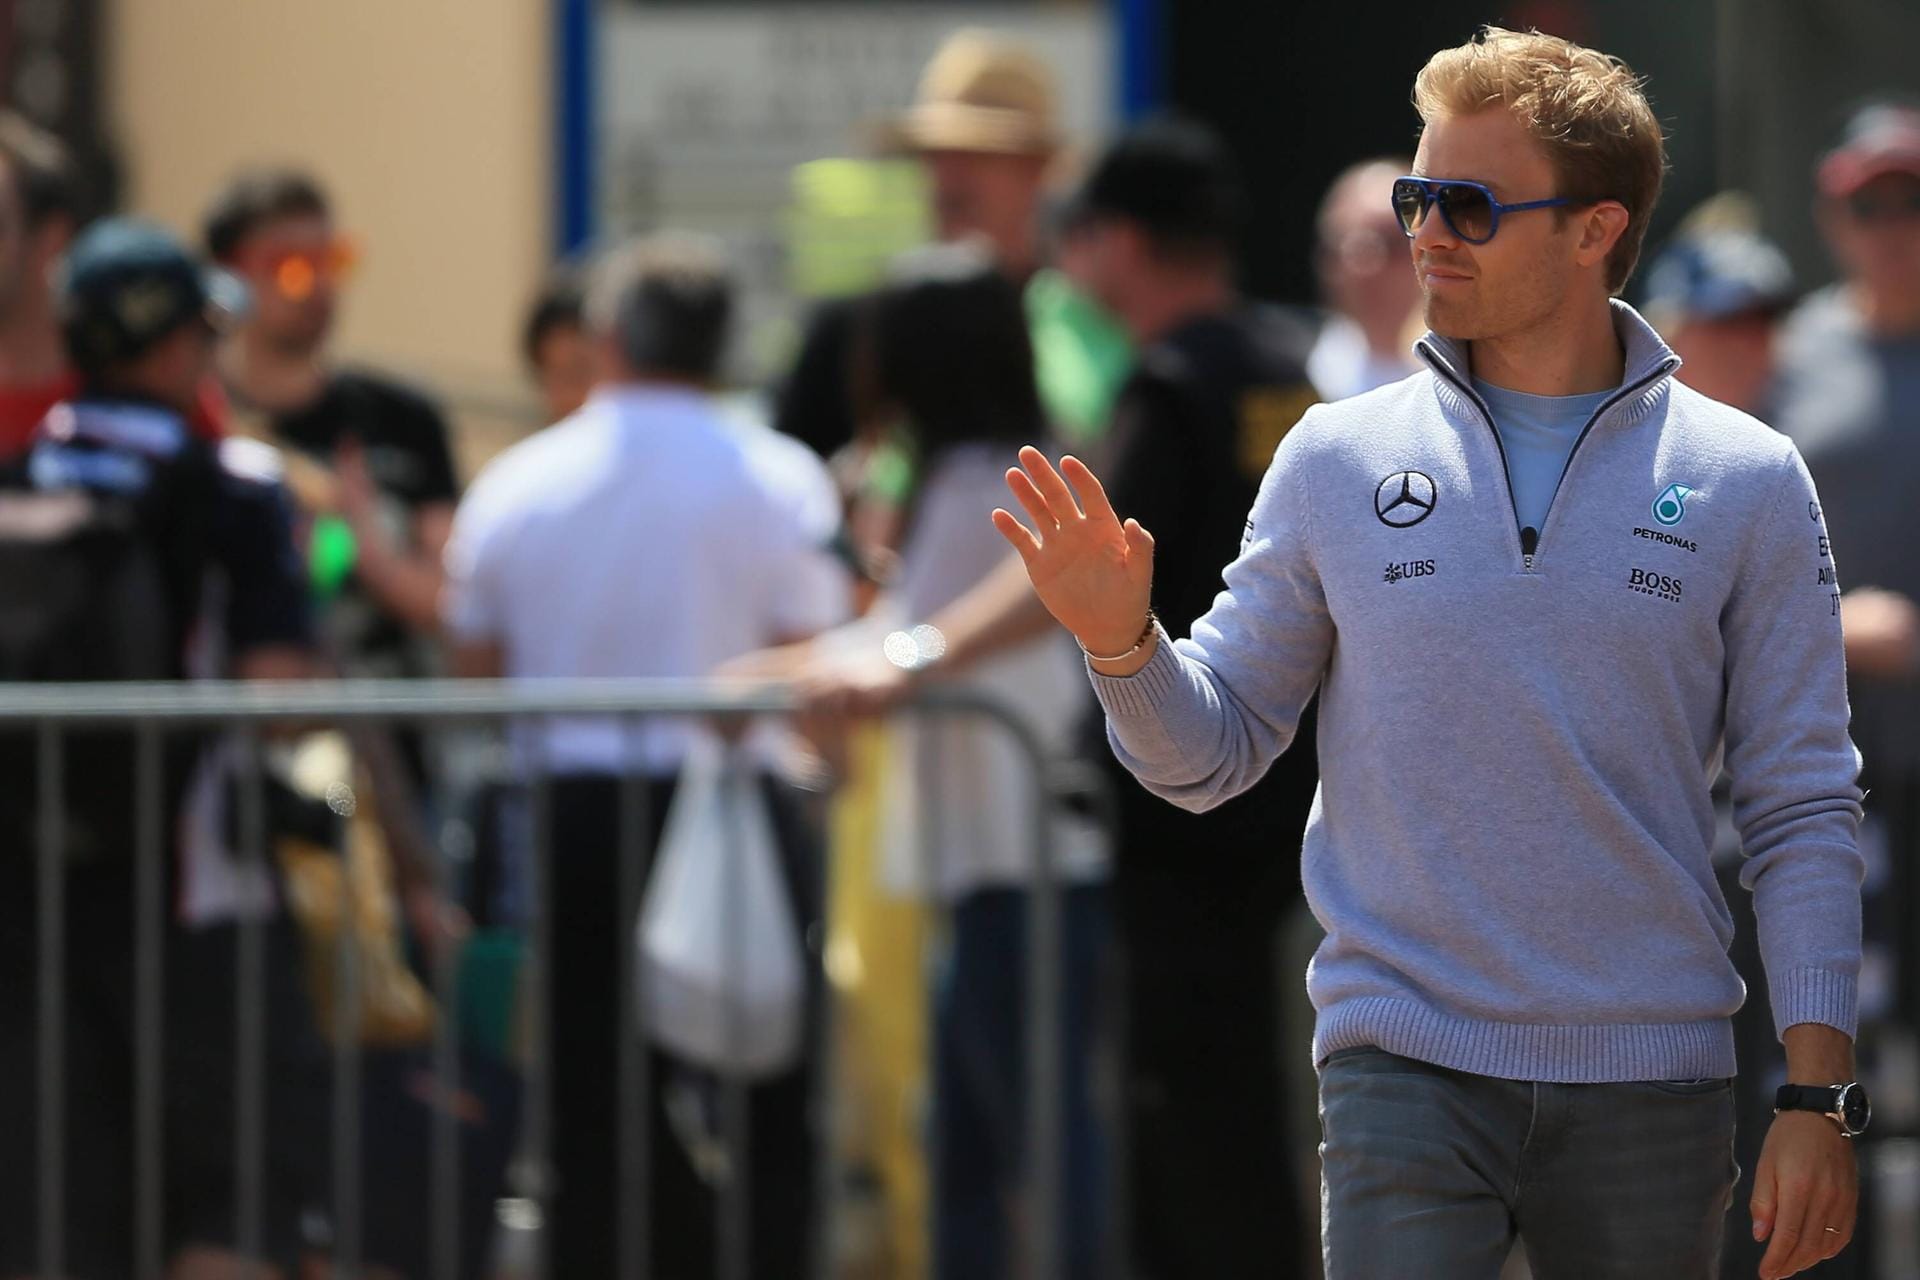 Ankunft des WM-Führenden: Nico Rosberg will bei seinem Heimrennen in Monaco den fünften Saison-Sieg holen.